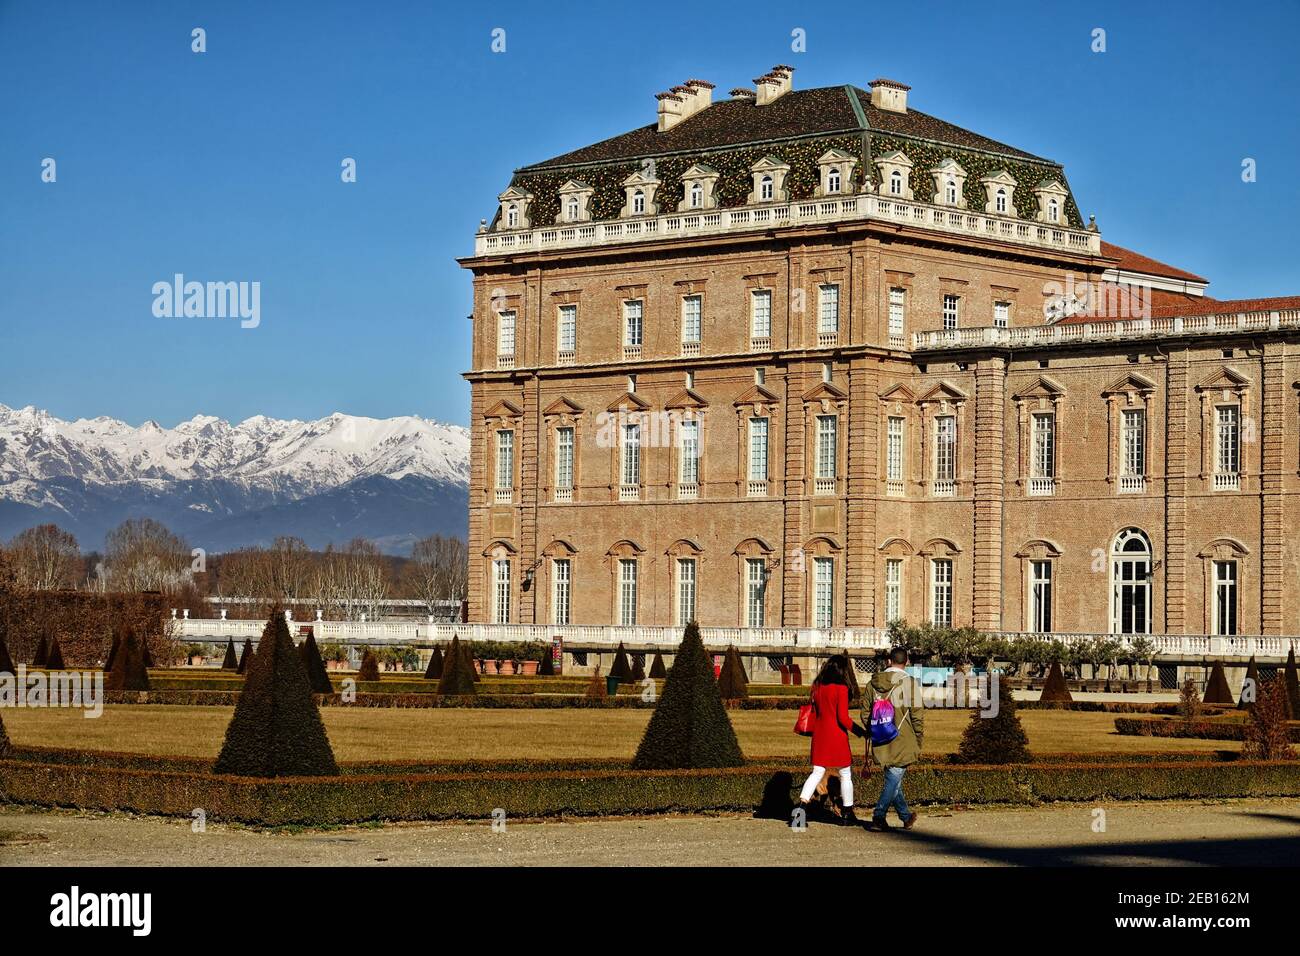 Der Palast von Venaria reale - Königliche Residenz von Savoyen. Turin, Italien . Stockfoto